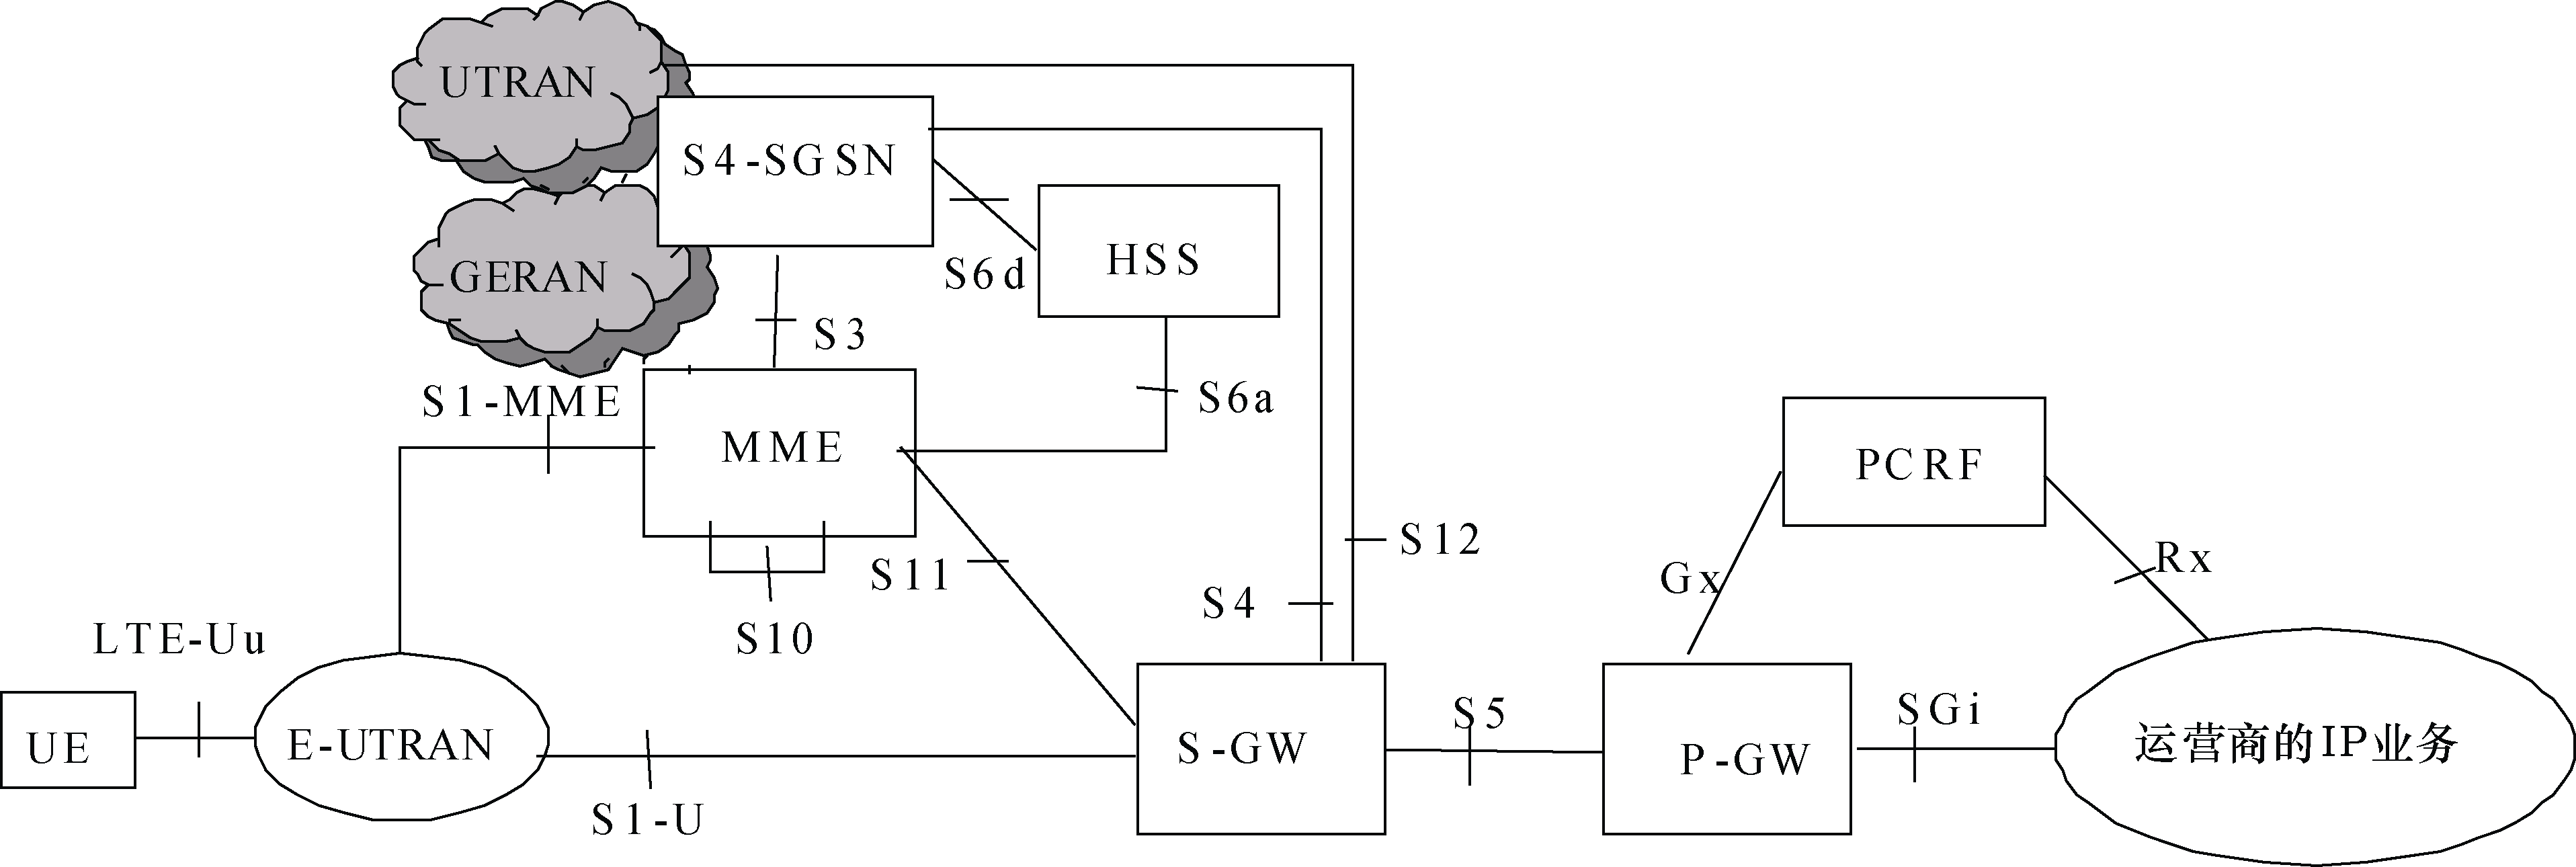 圖1  3GPP非漫遊架構—S-GW與P-GW分設